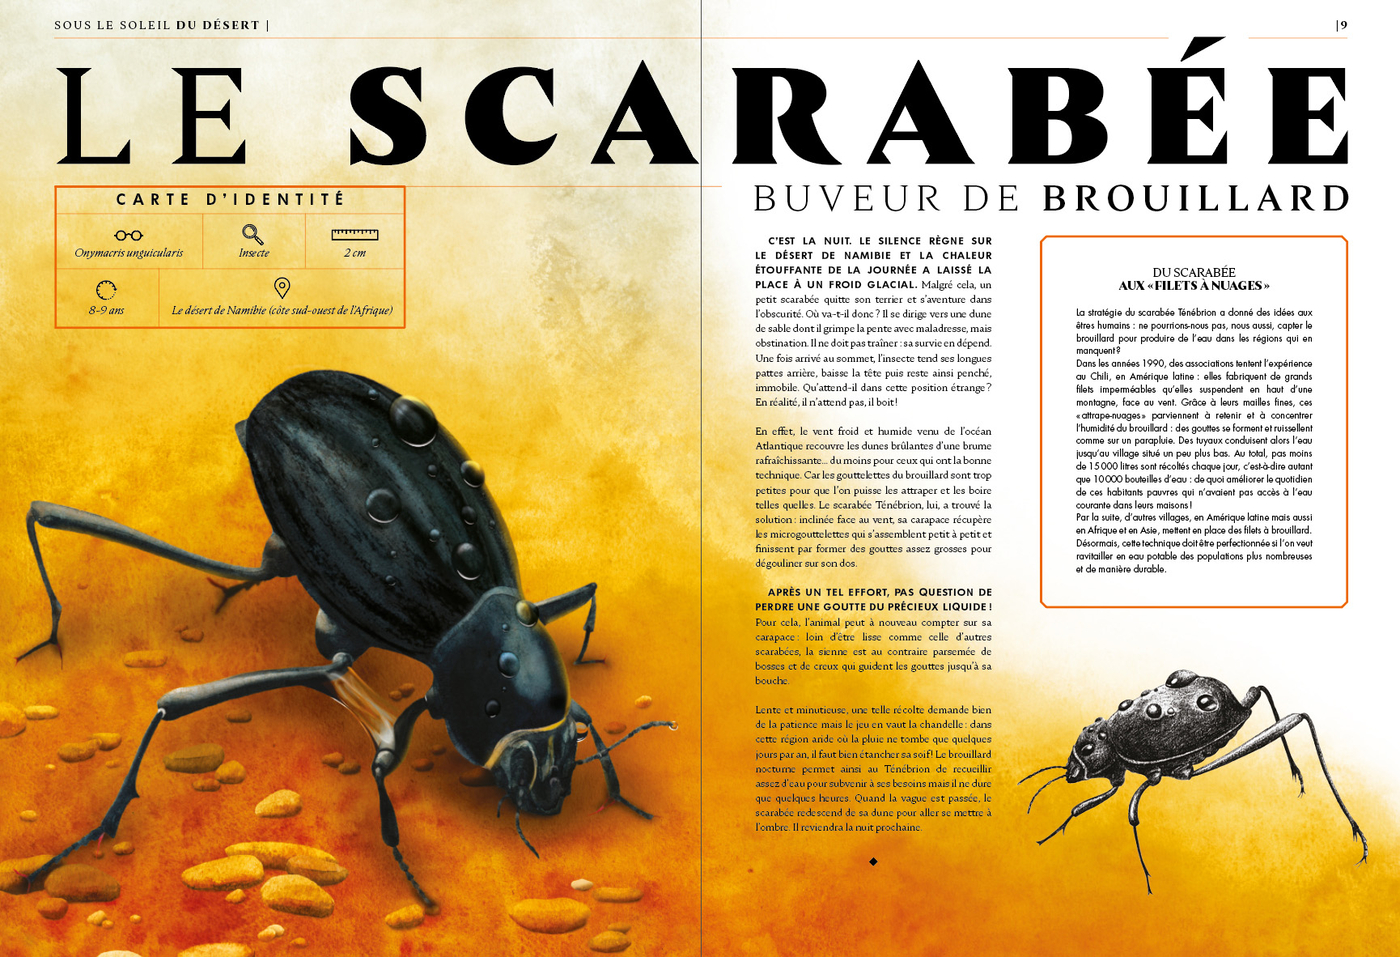 Planche illustrant et décrivant les capacités hors norme du scarabée, issue du Grand livre des animaux de l'extrême